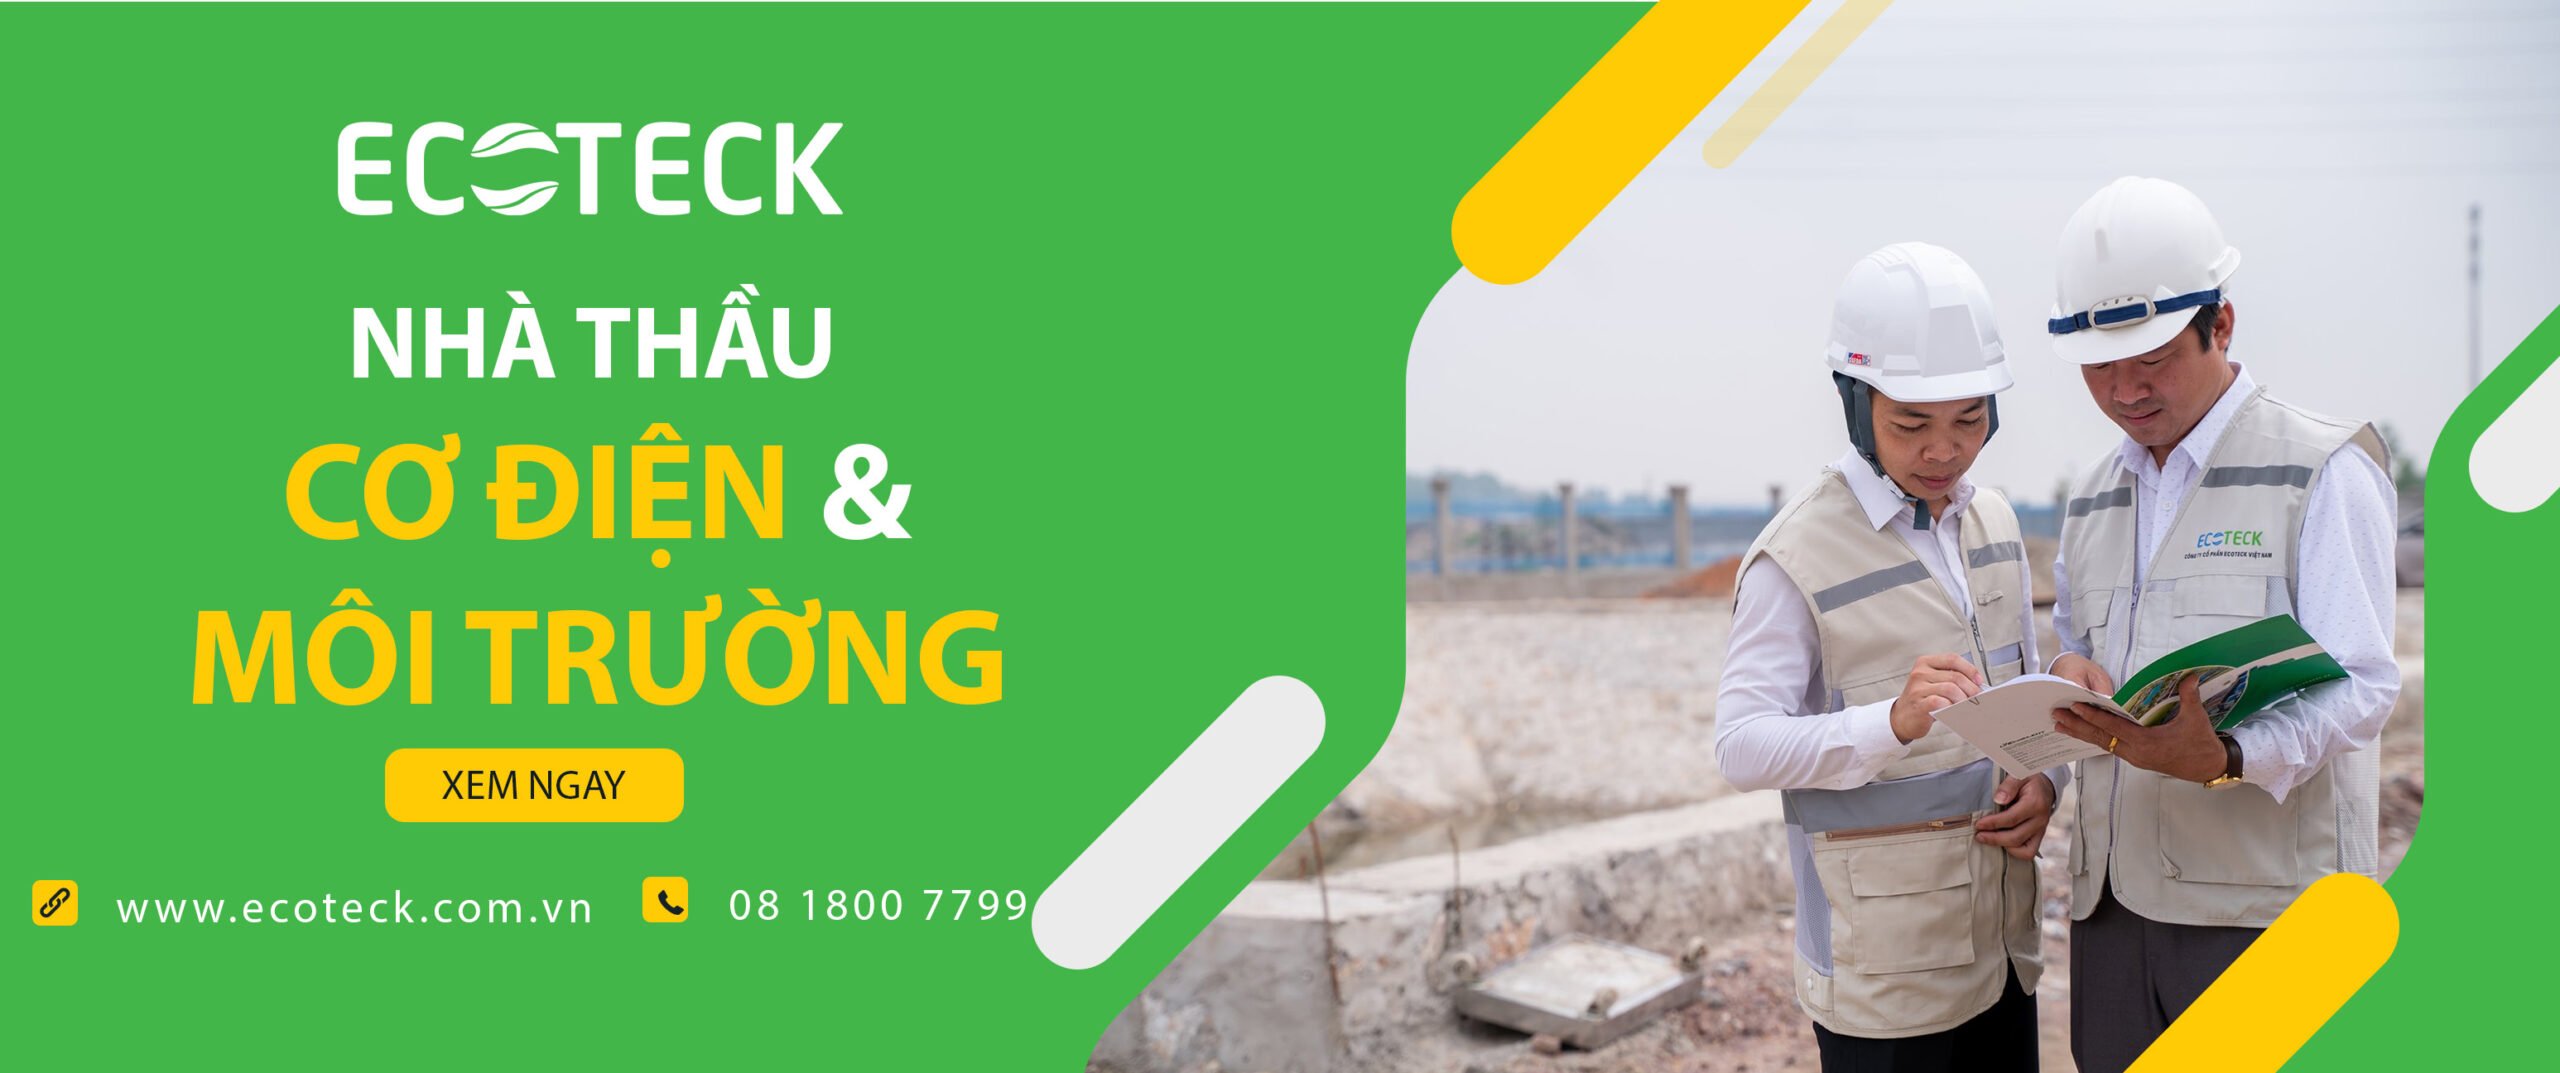 Ecoteck Việt Nam cung cấp đa dạng các dịch vụ Cơ - Điện - Môi trường